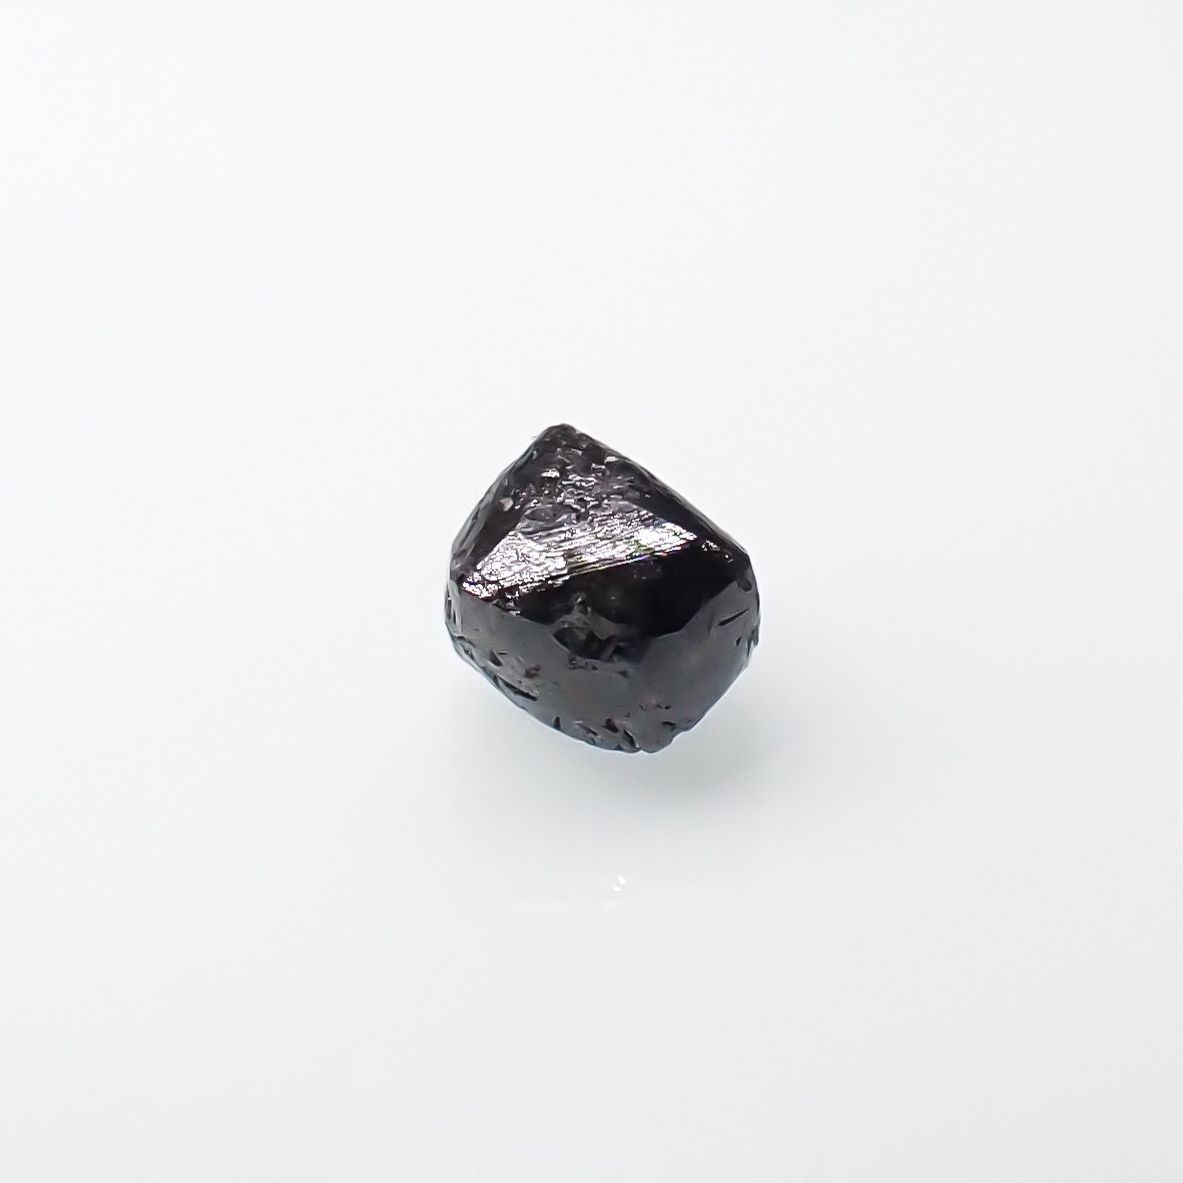 moon.meさん用 天然石 ブラックダイヤモンド6mm ネックレストップ他 